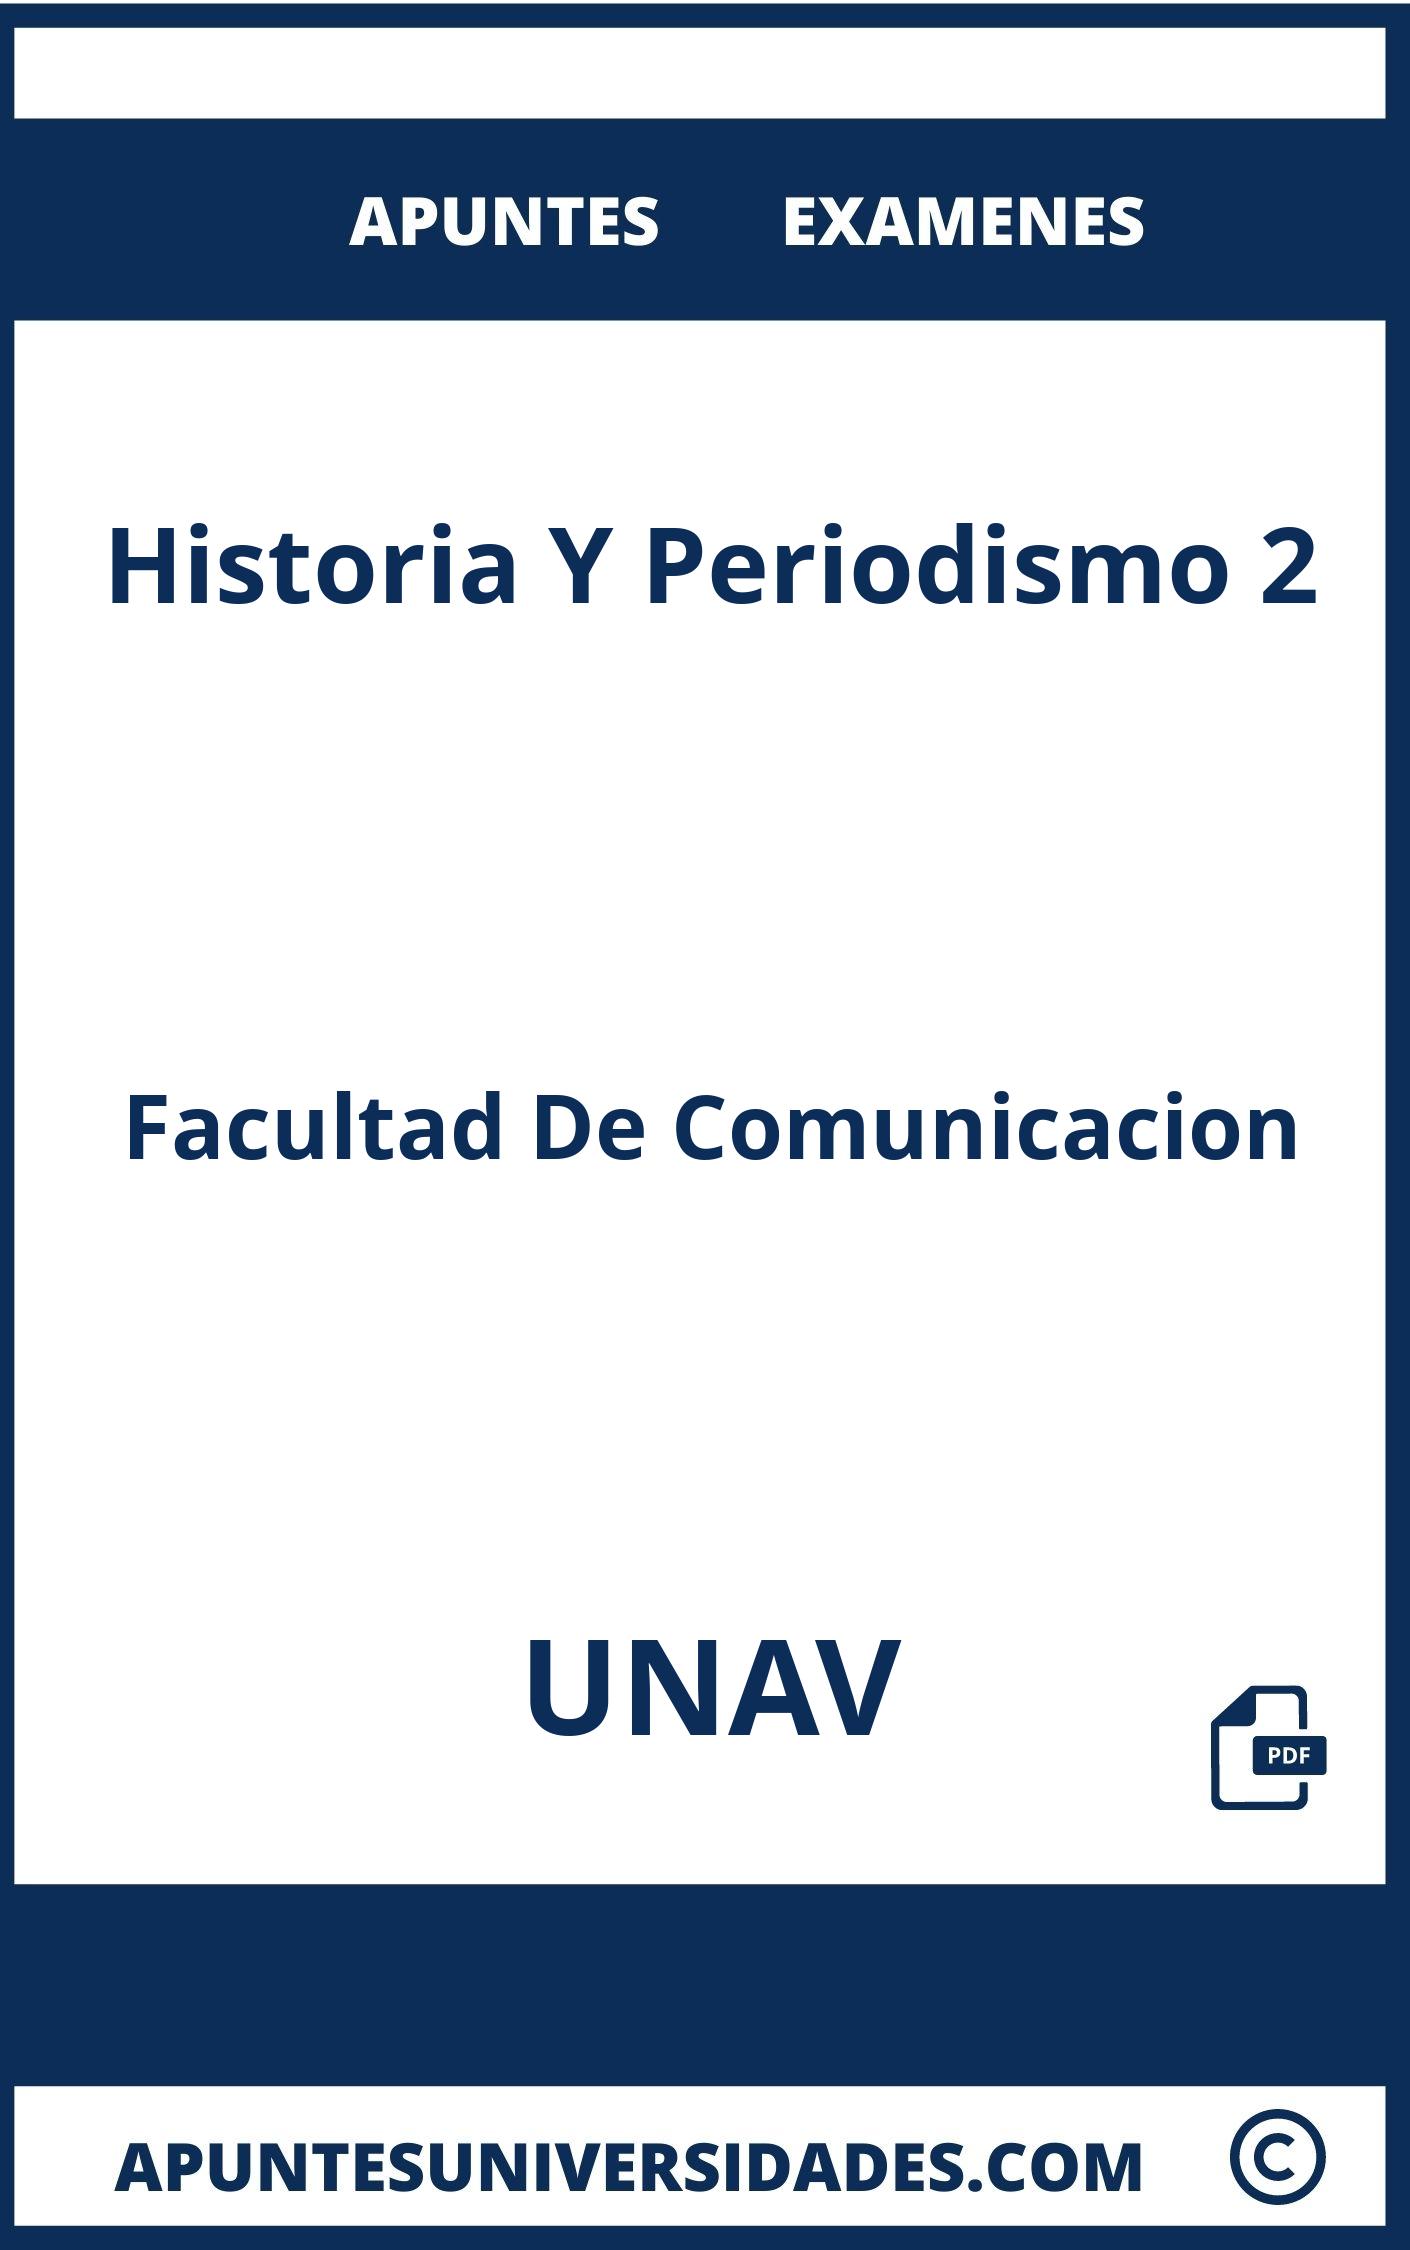 Apuntes Examenes Historia Y Periodismo 2 UNAV